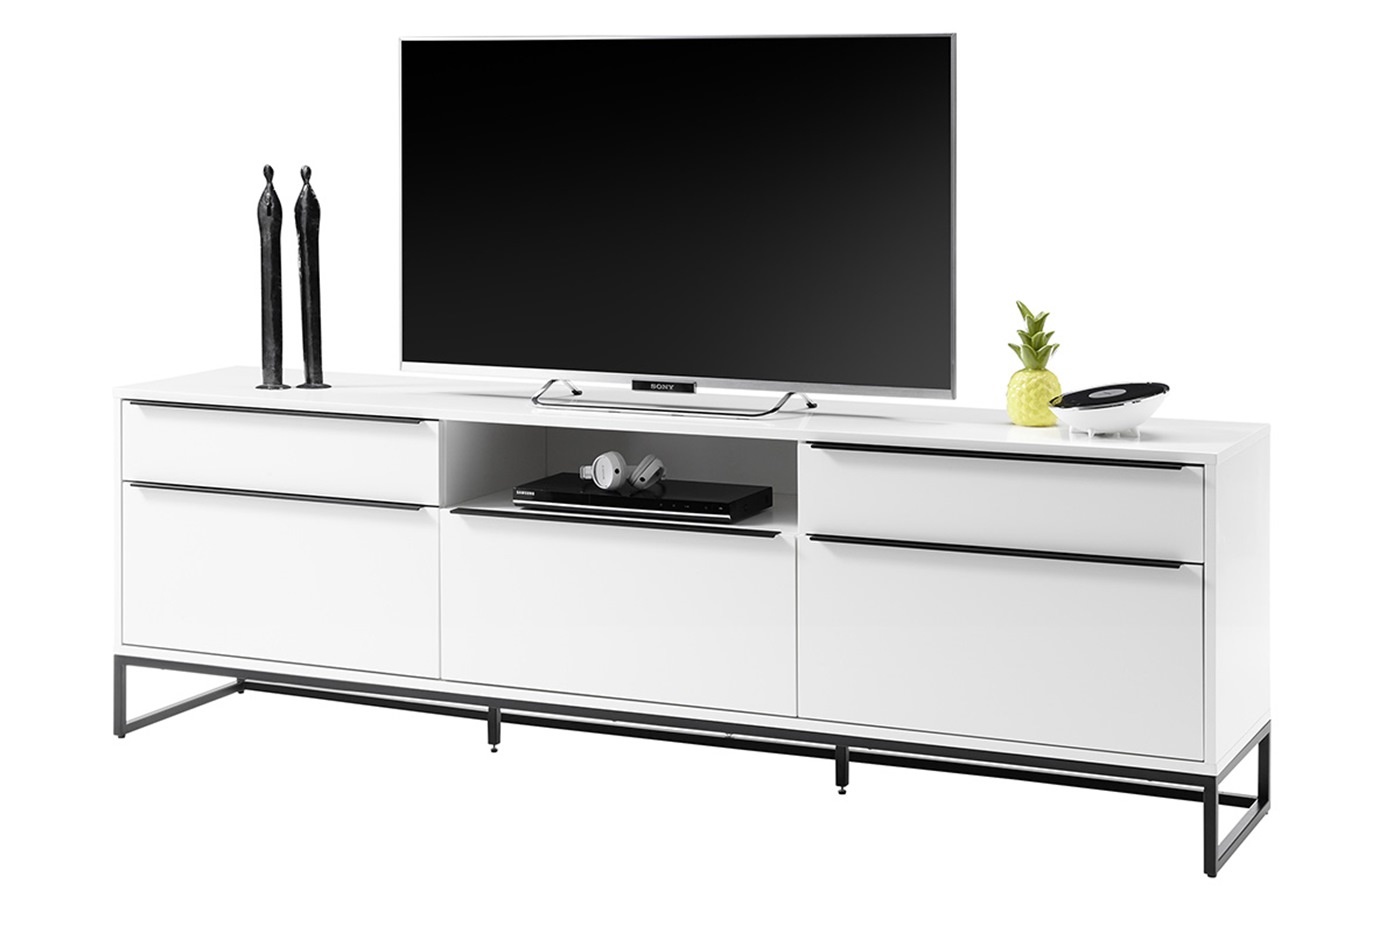 Autorisatie Vorming ambulance Lille TV meubel wit 215 cm - Hoogglans meubelen / mango houten meubelen |  Aktie Wonen.nl